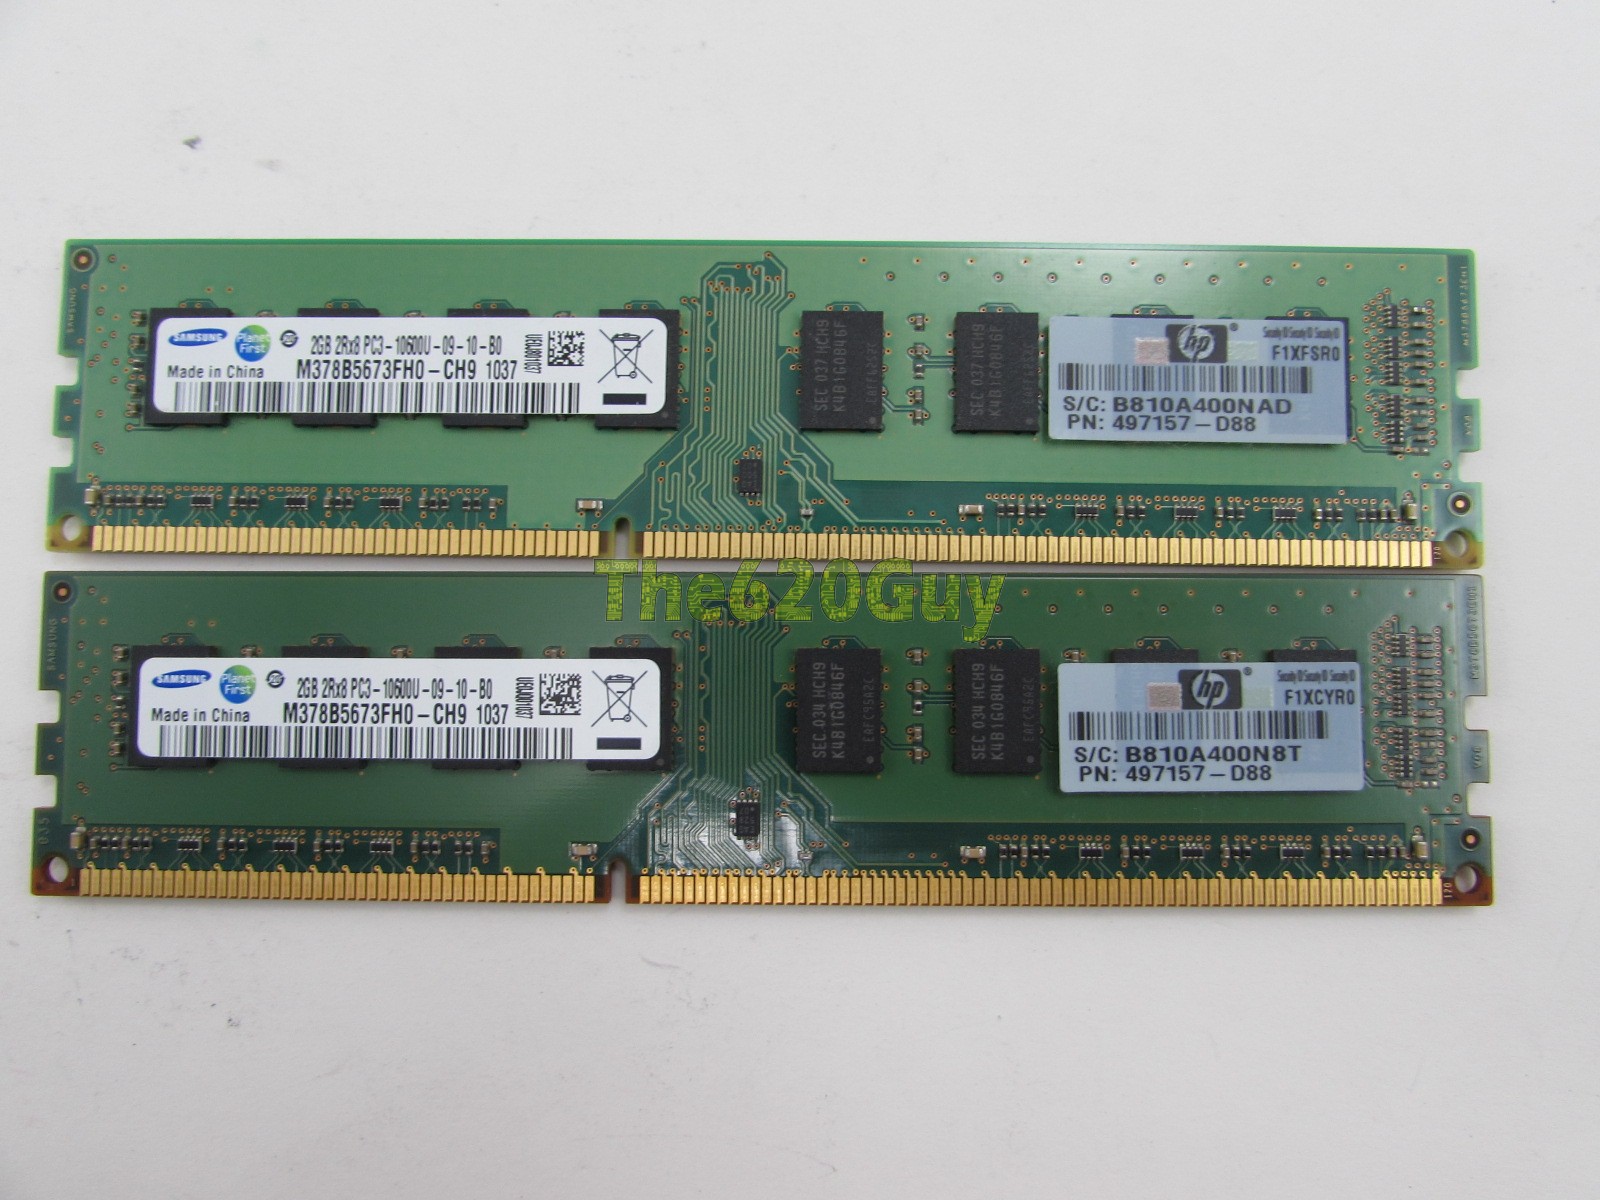 Micron 2 GB HP 497157-D88 PC3-10600U 1333 MHz 1Rx8 DDR3 NON-ECC memoria computer 